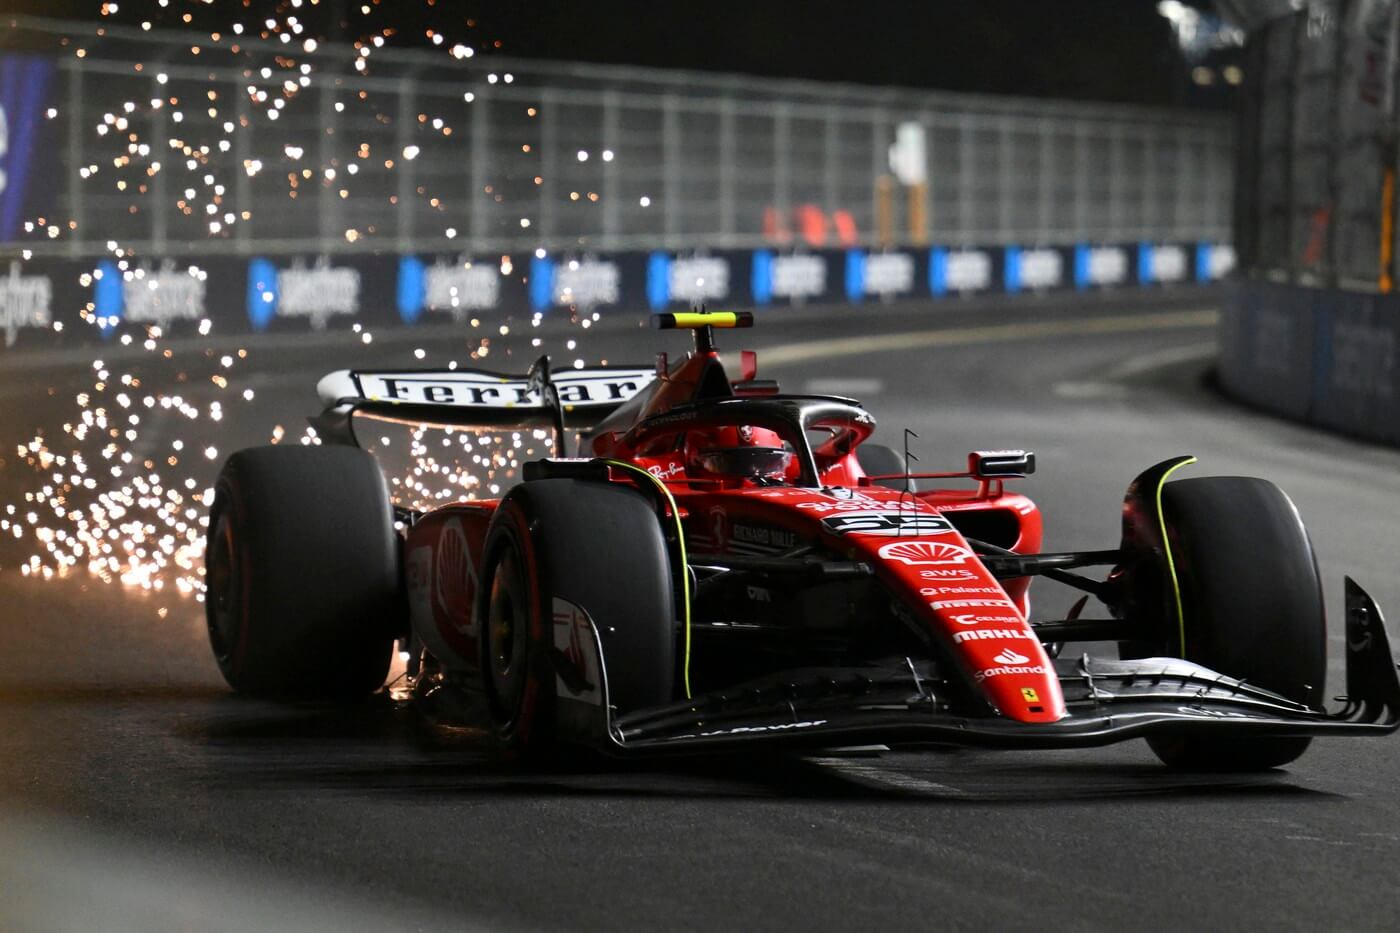 Motosport, F1, jezdec Carlos Sainz jr. během závodního víkendu Formule 1 v Las Vegas